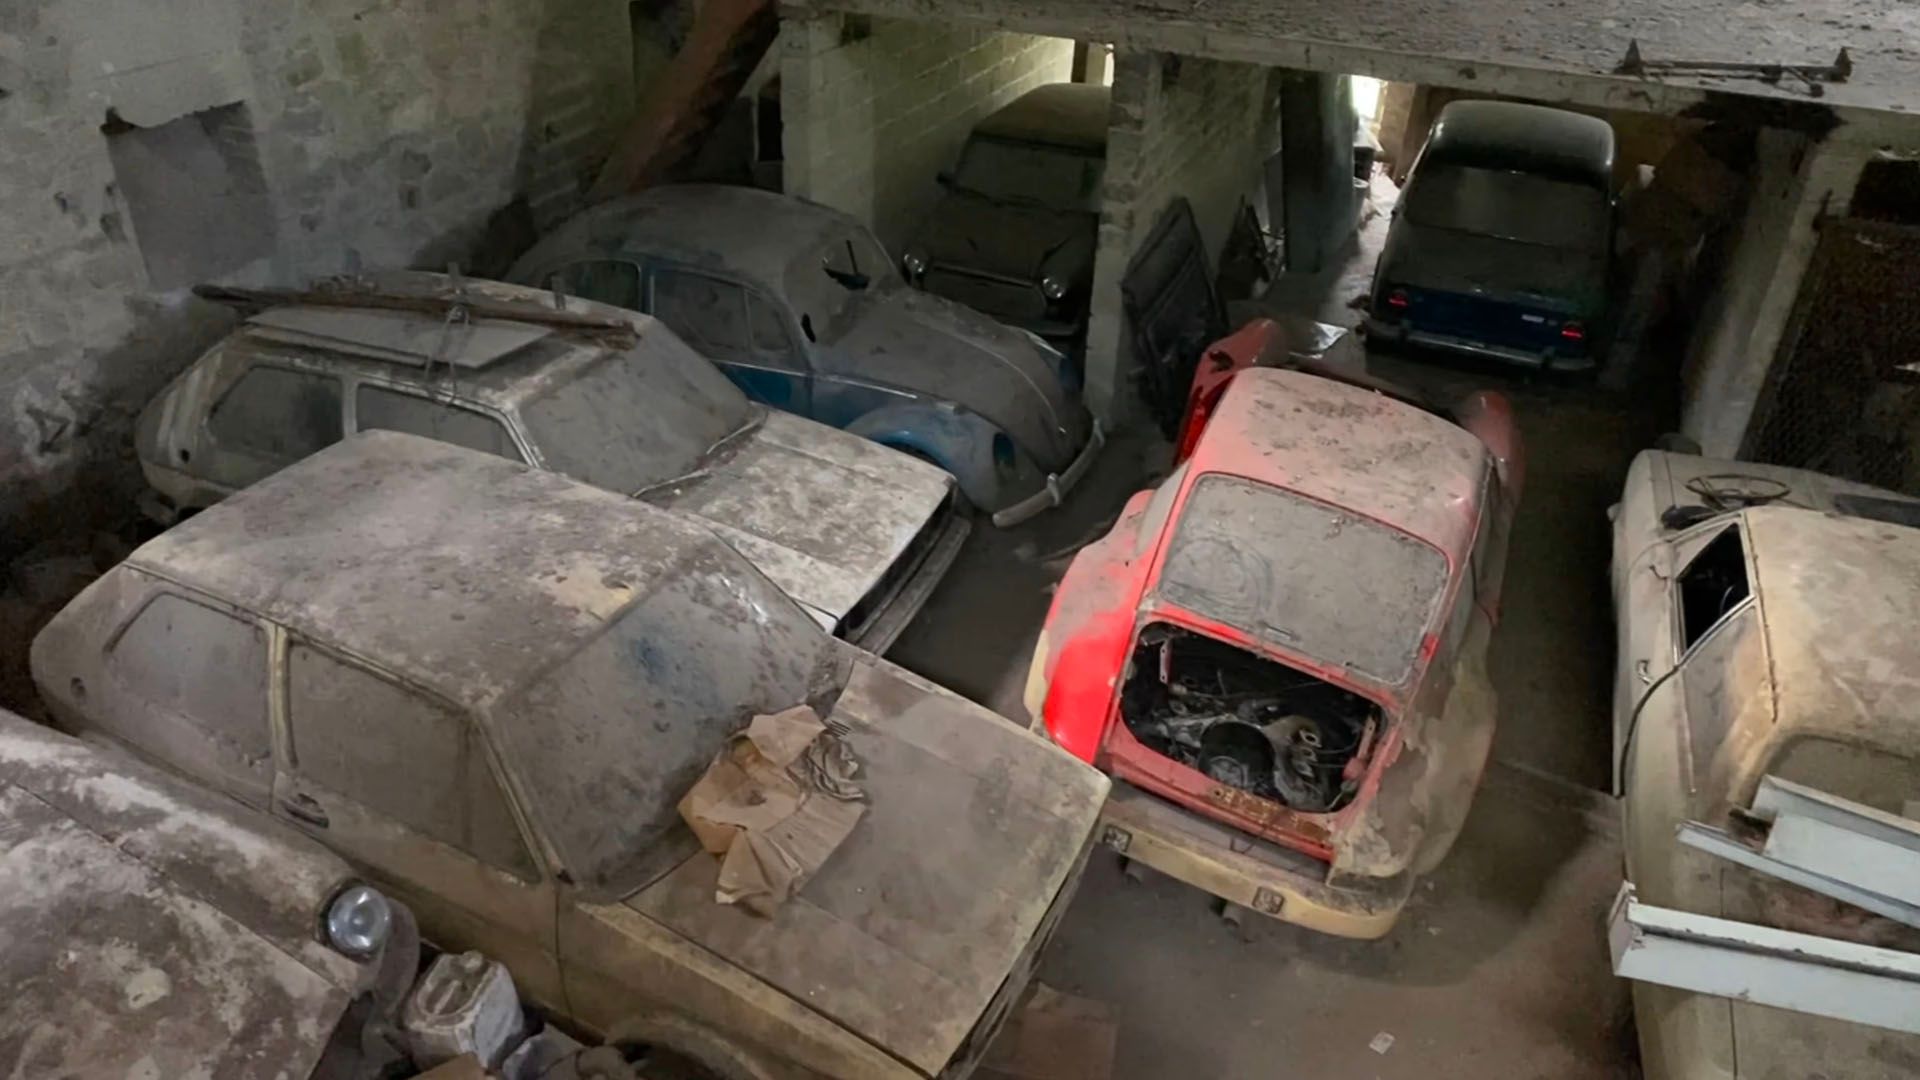 Porsche 911, Golf GTI, Beetle abandoned in wearhouse